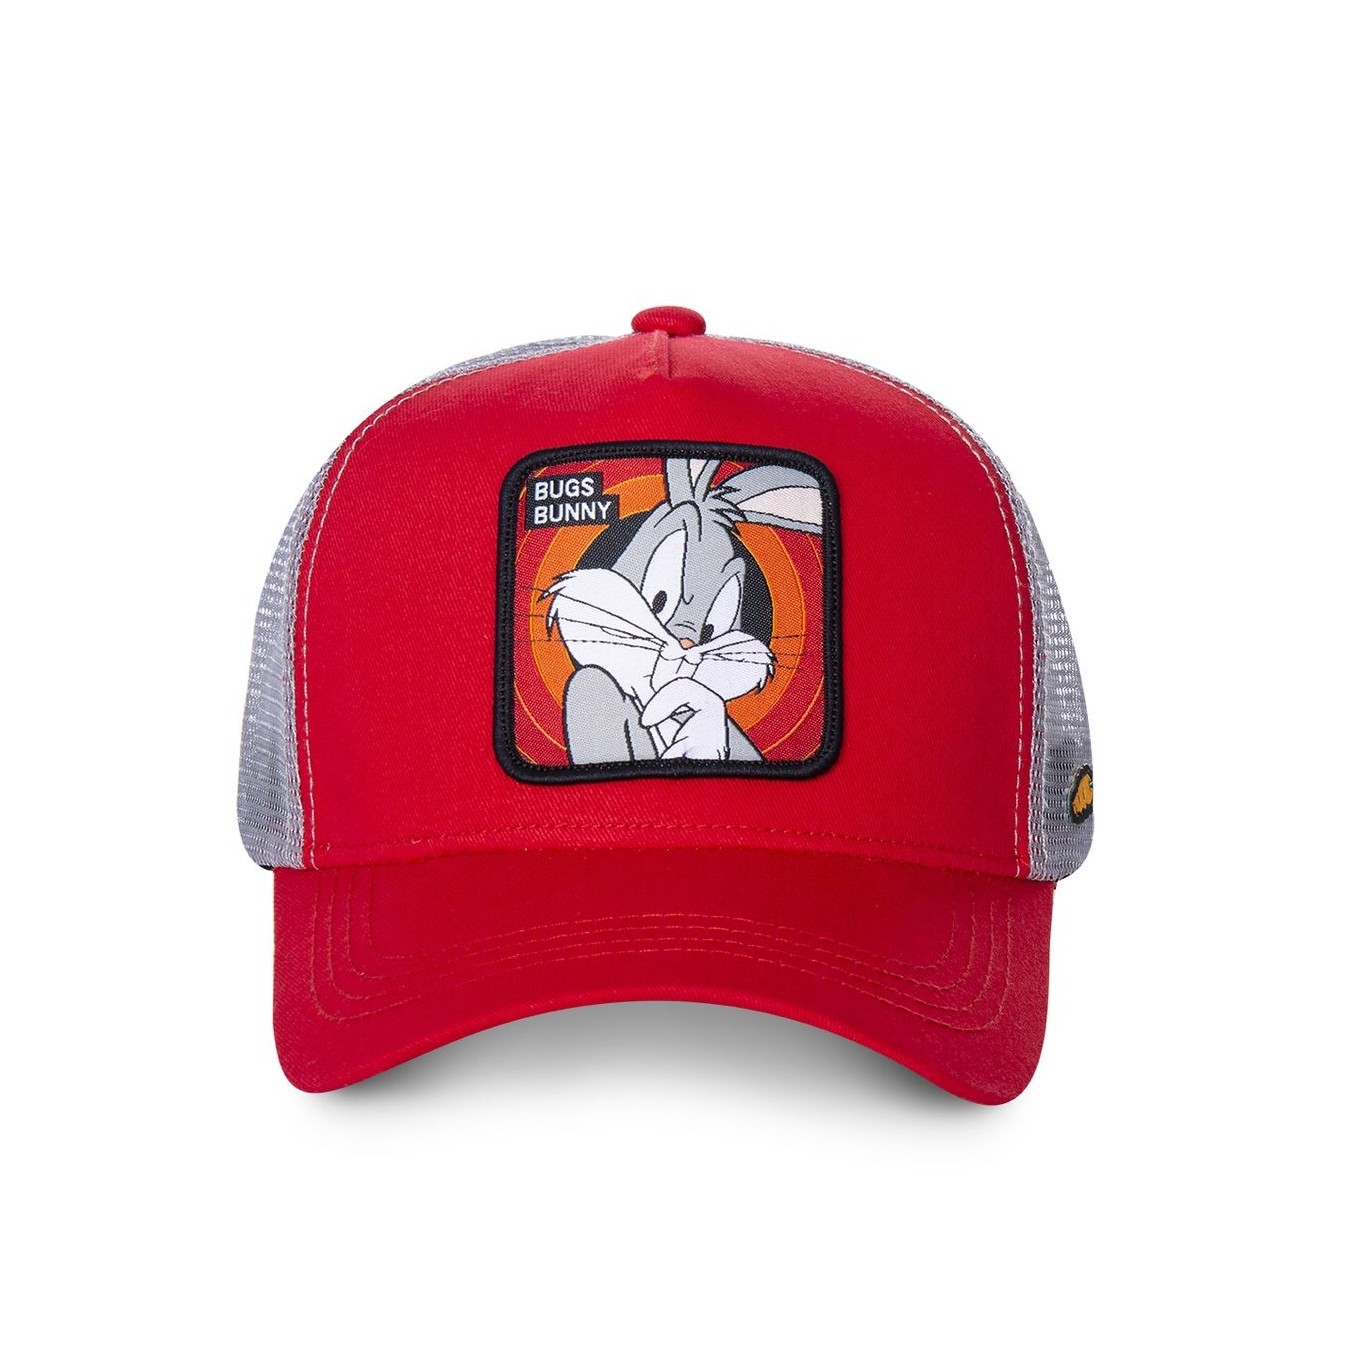 Men's Capslab Looney Tunes Bunny Red Trucker Cap Capslab - 2